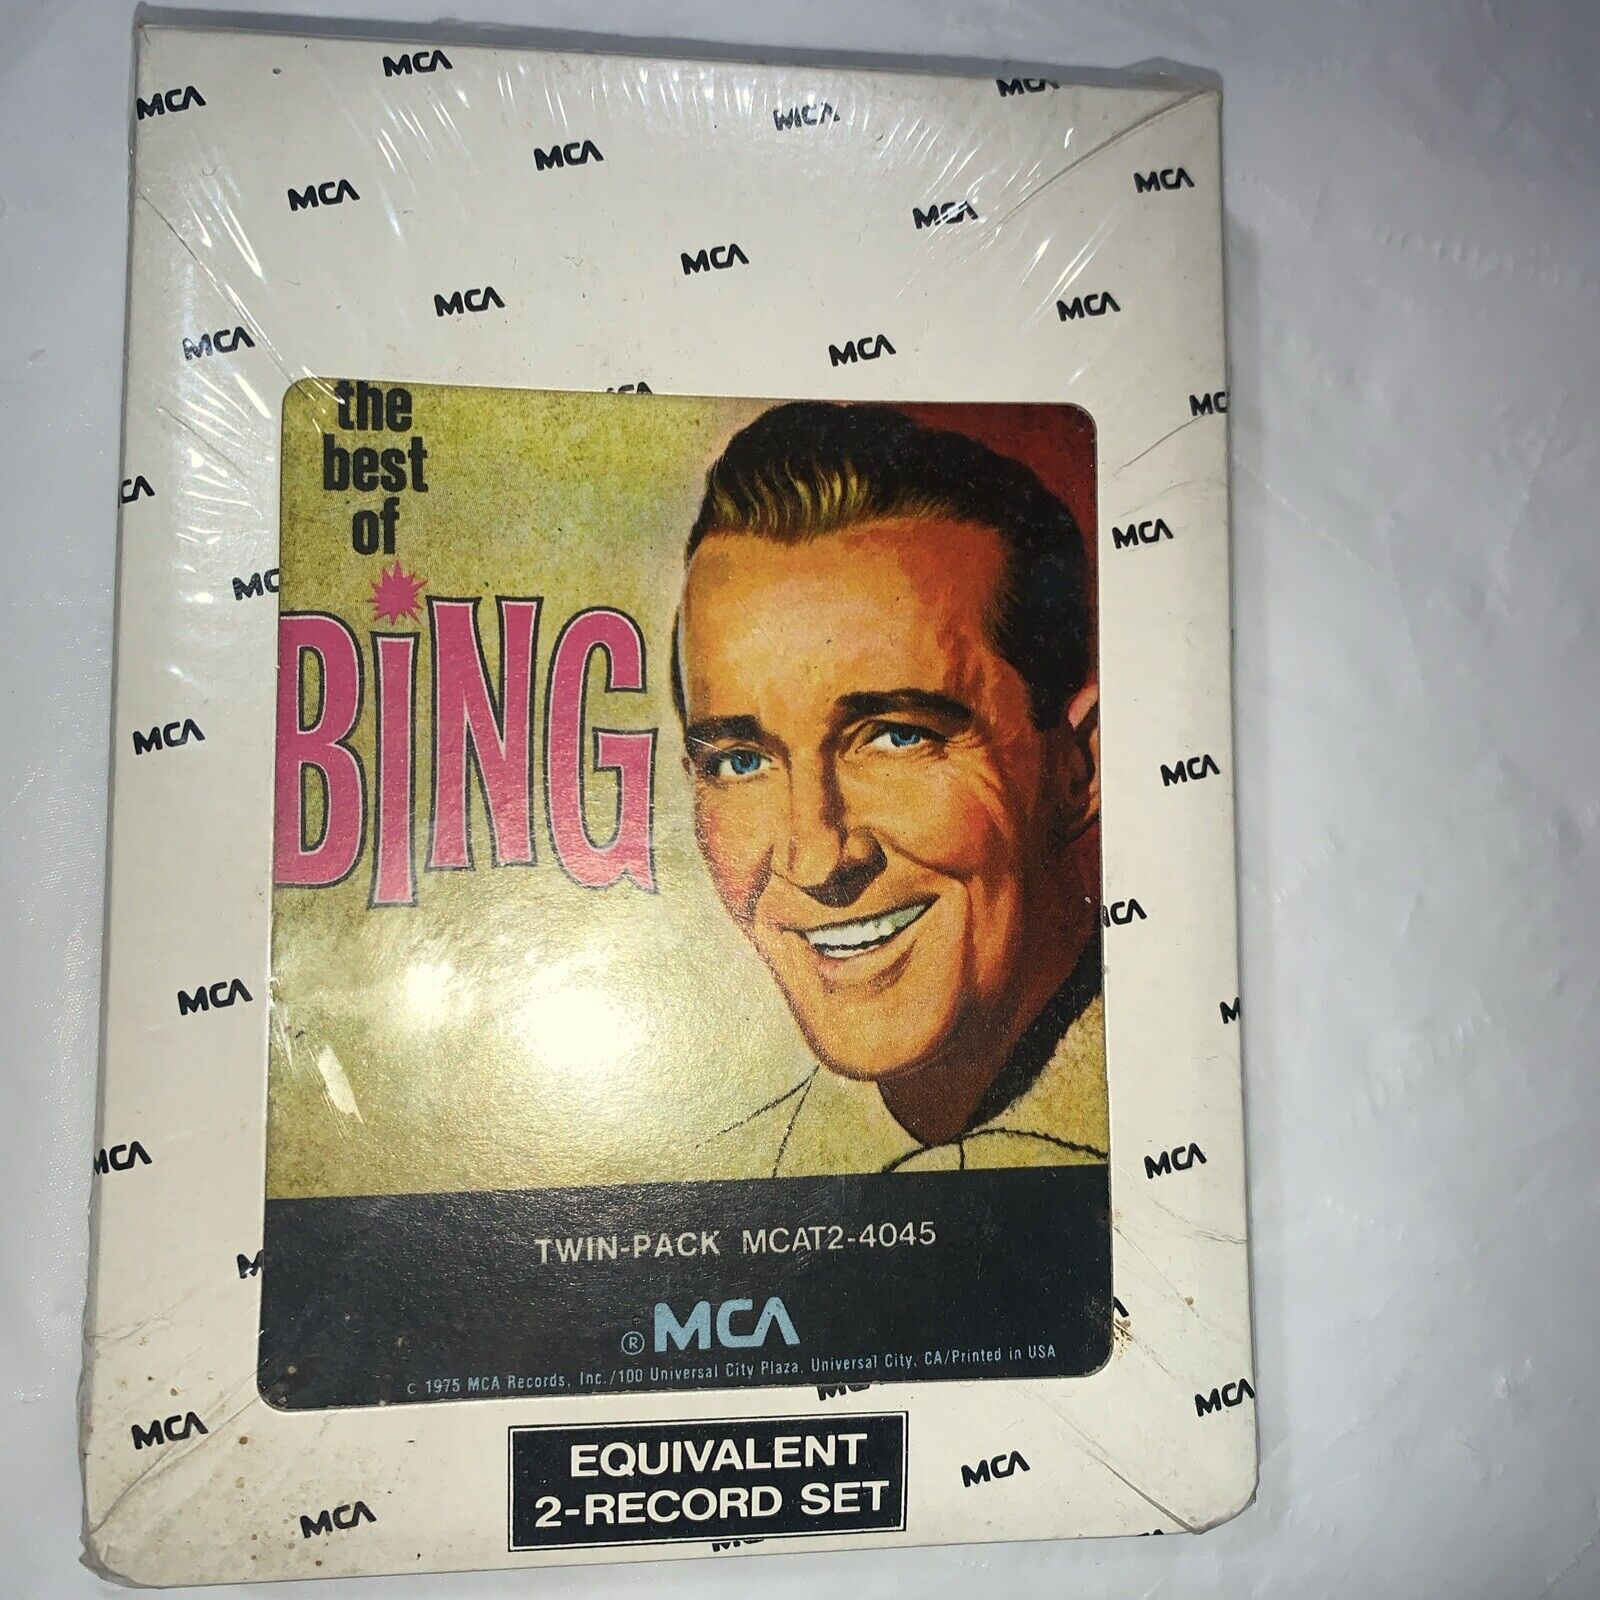 Vintage 1969 The Best Of Bing Crosby 8 Track Tape Sleeve Unopened